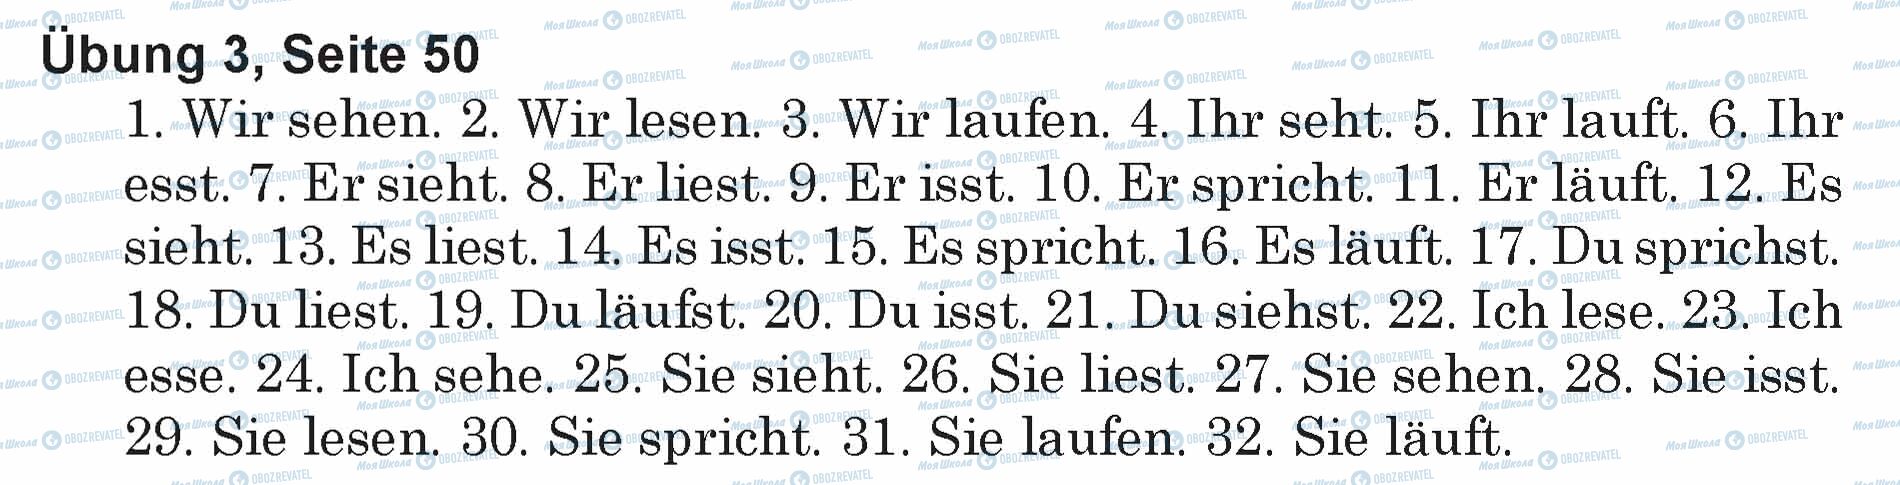 ГДЗ Німецька мова 5 клас сторінка Ubung 3, Seite 50